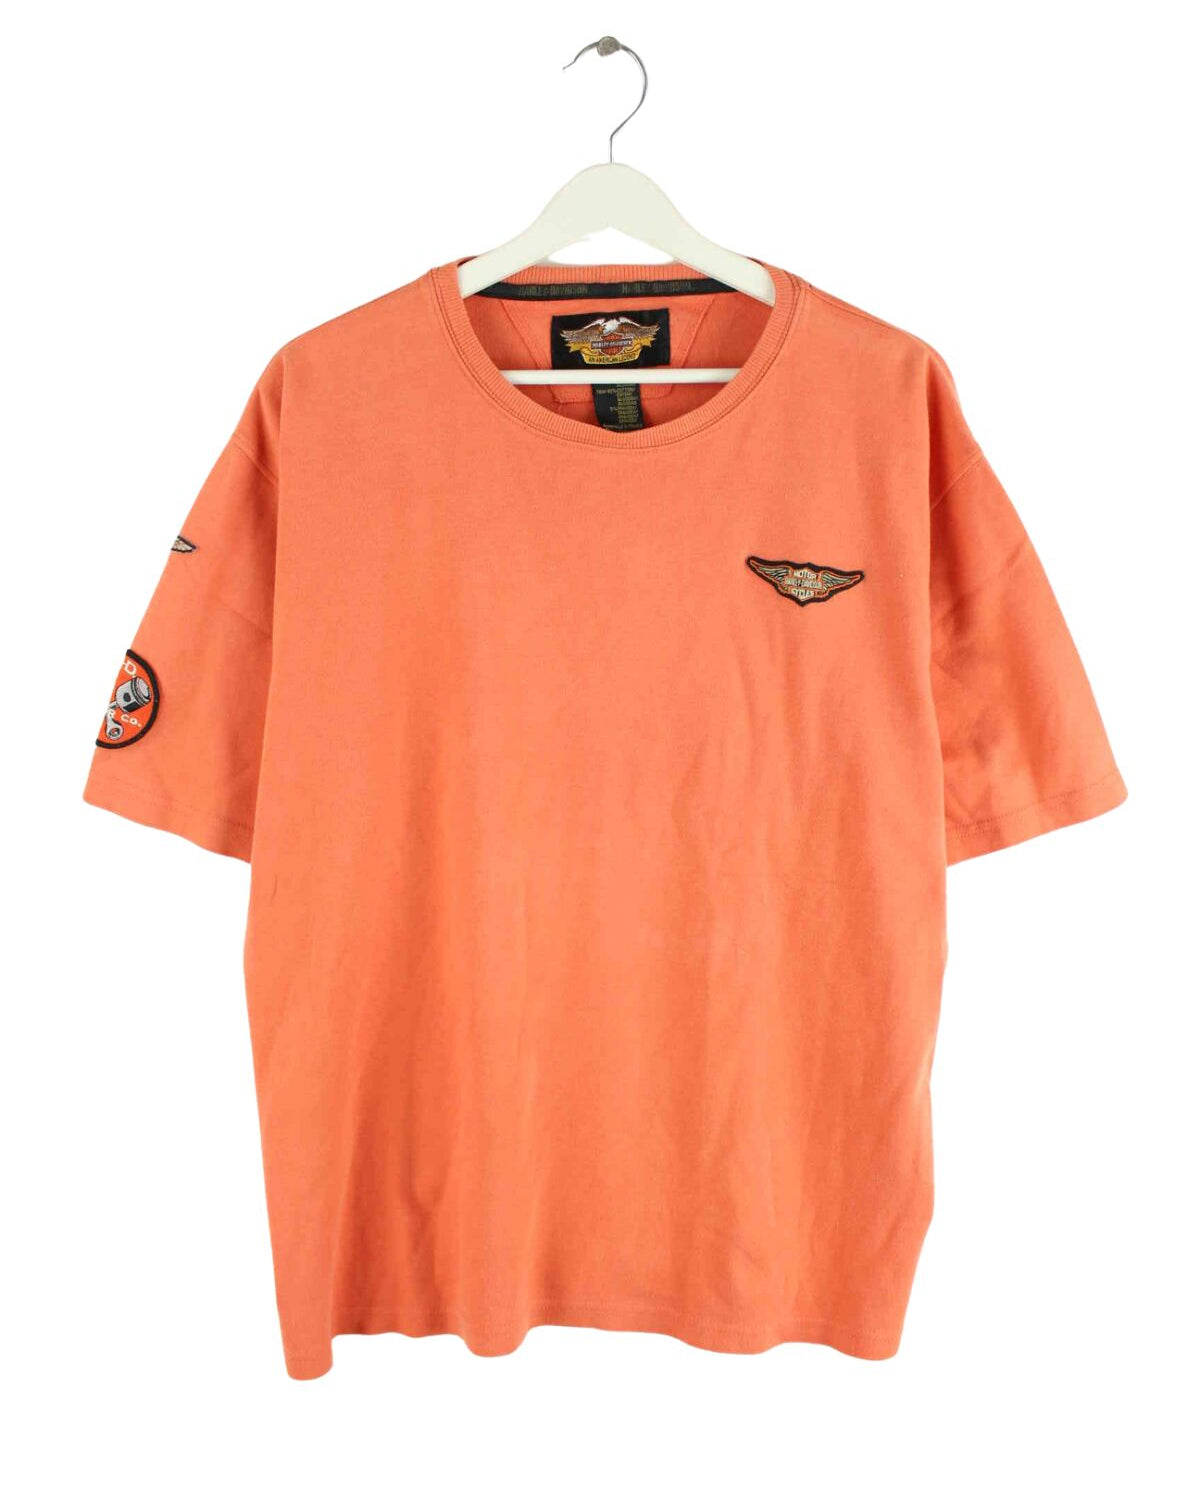 Harley Davidson 90s Vintage Patch T-Shirt Orange L (front image)